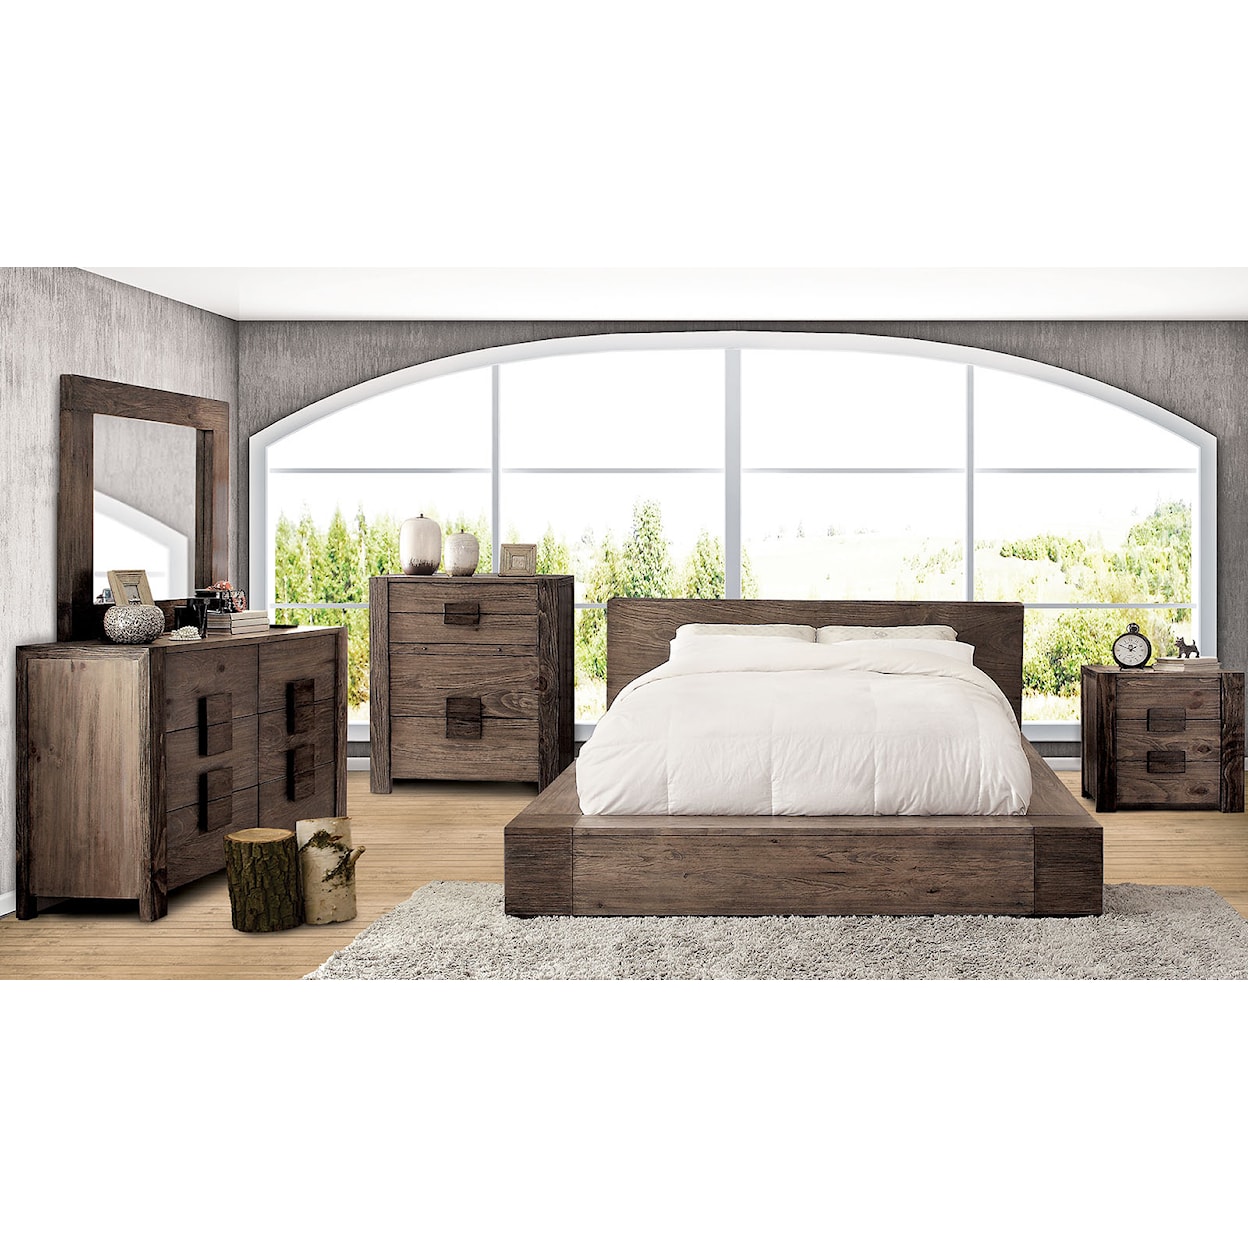 Furniture of America Janeiro 5-Piece Queen Bedroom Set